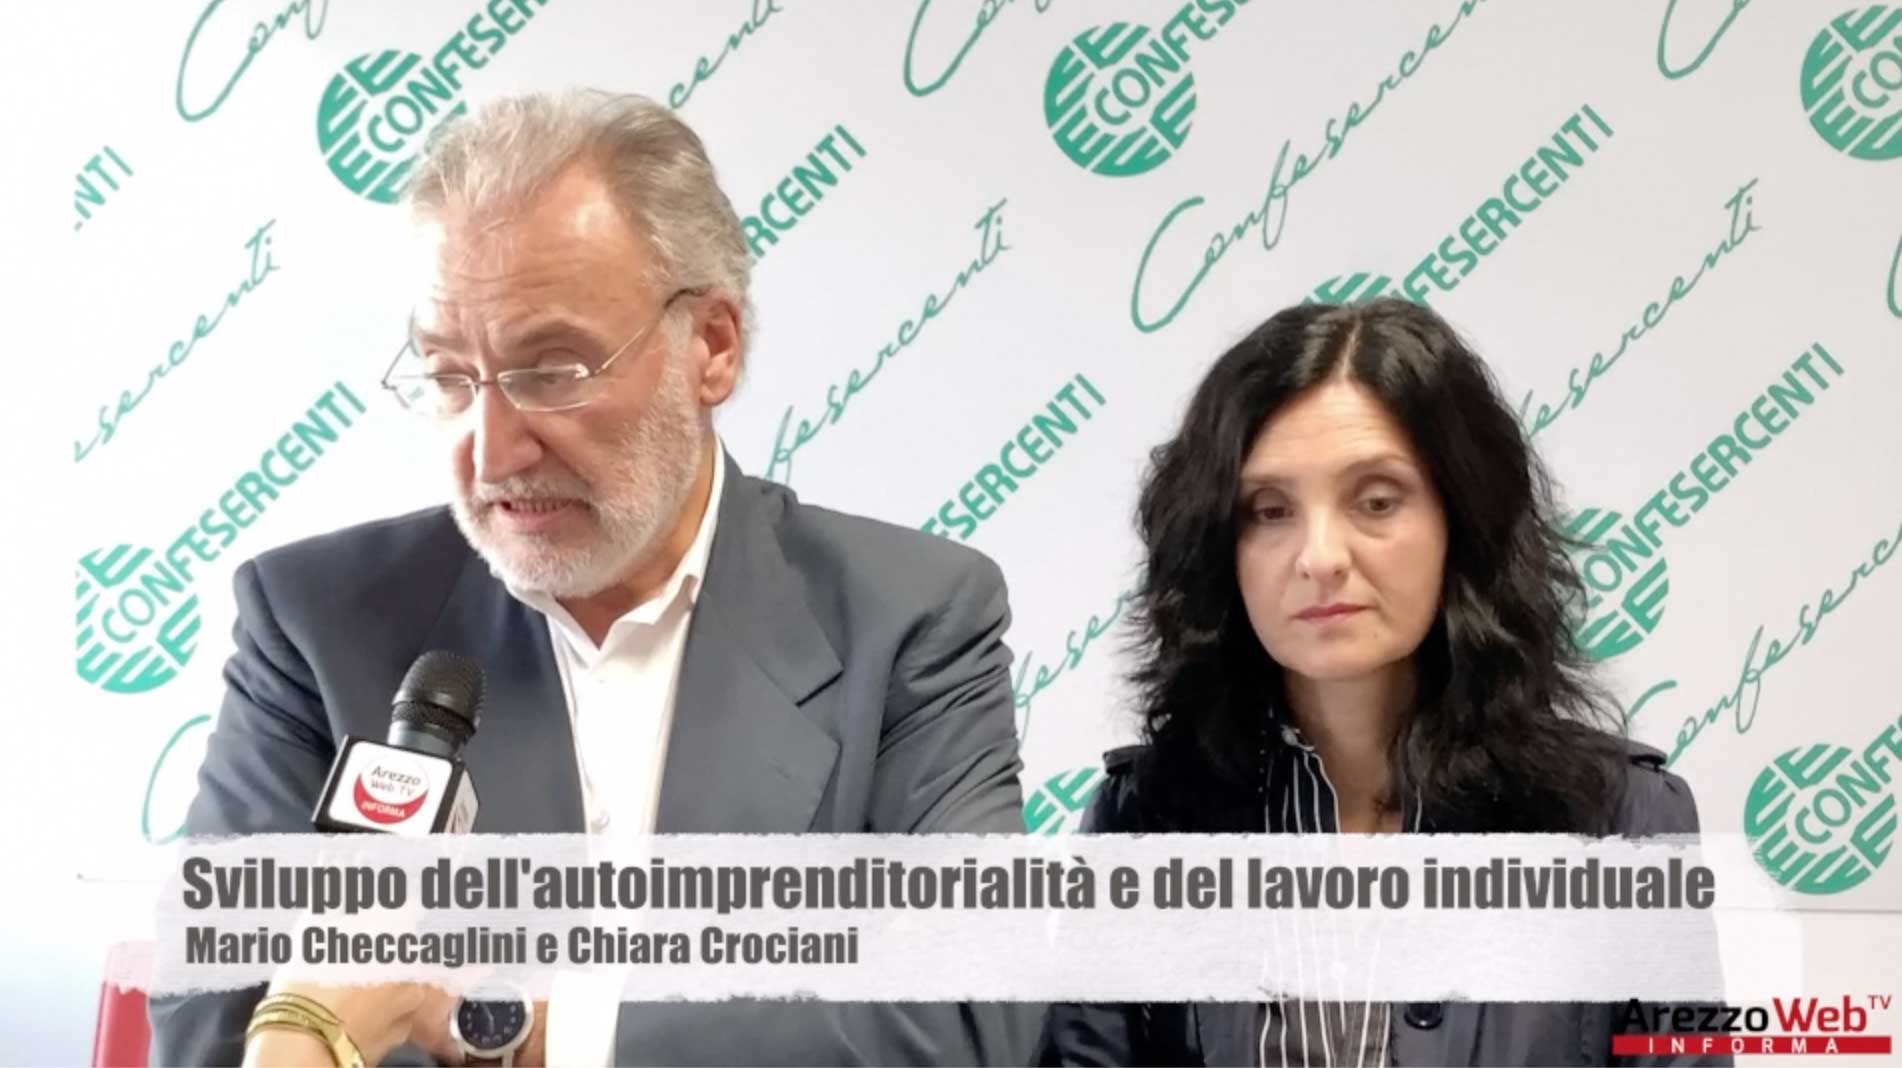 Mario Checcaglini e Chiara Crociani ci presentano il nuovo servizio gratuito di Confesercenti per aprire un’attività commerciale